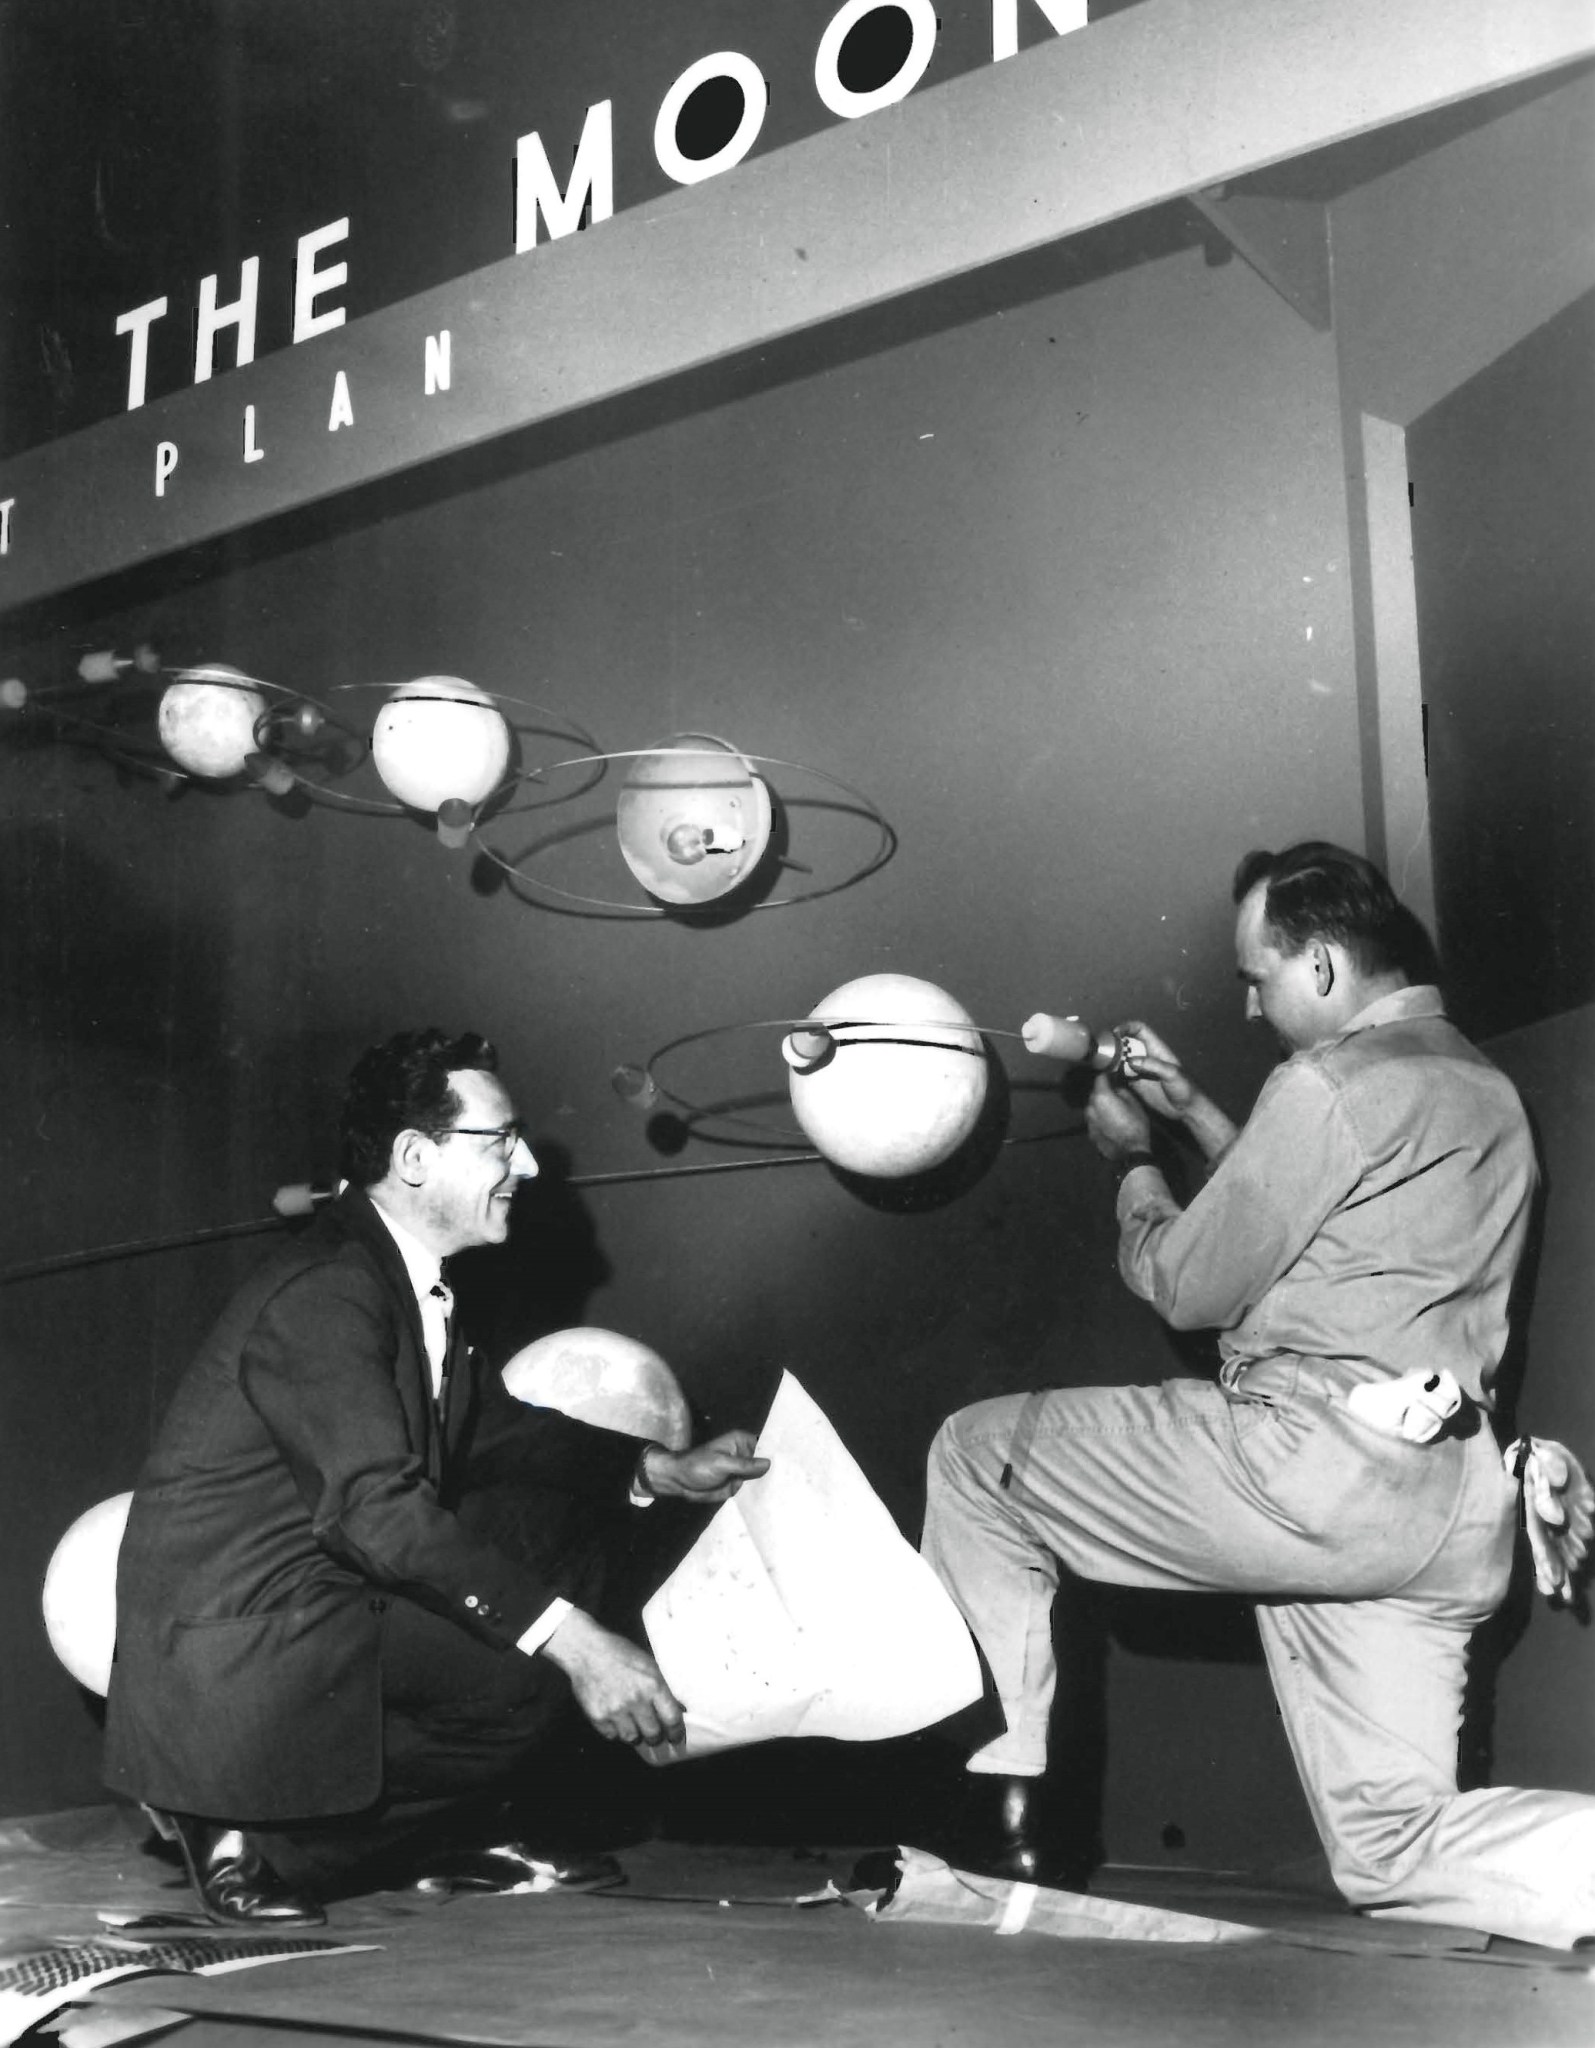 Two men kneeling to work on exhibit.